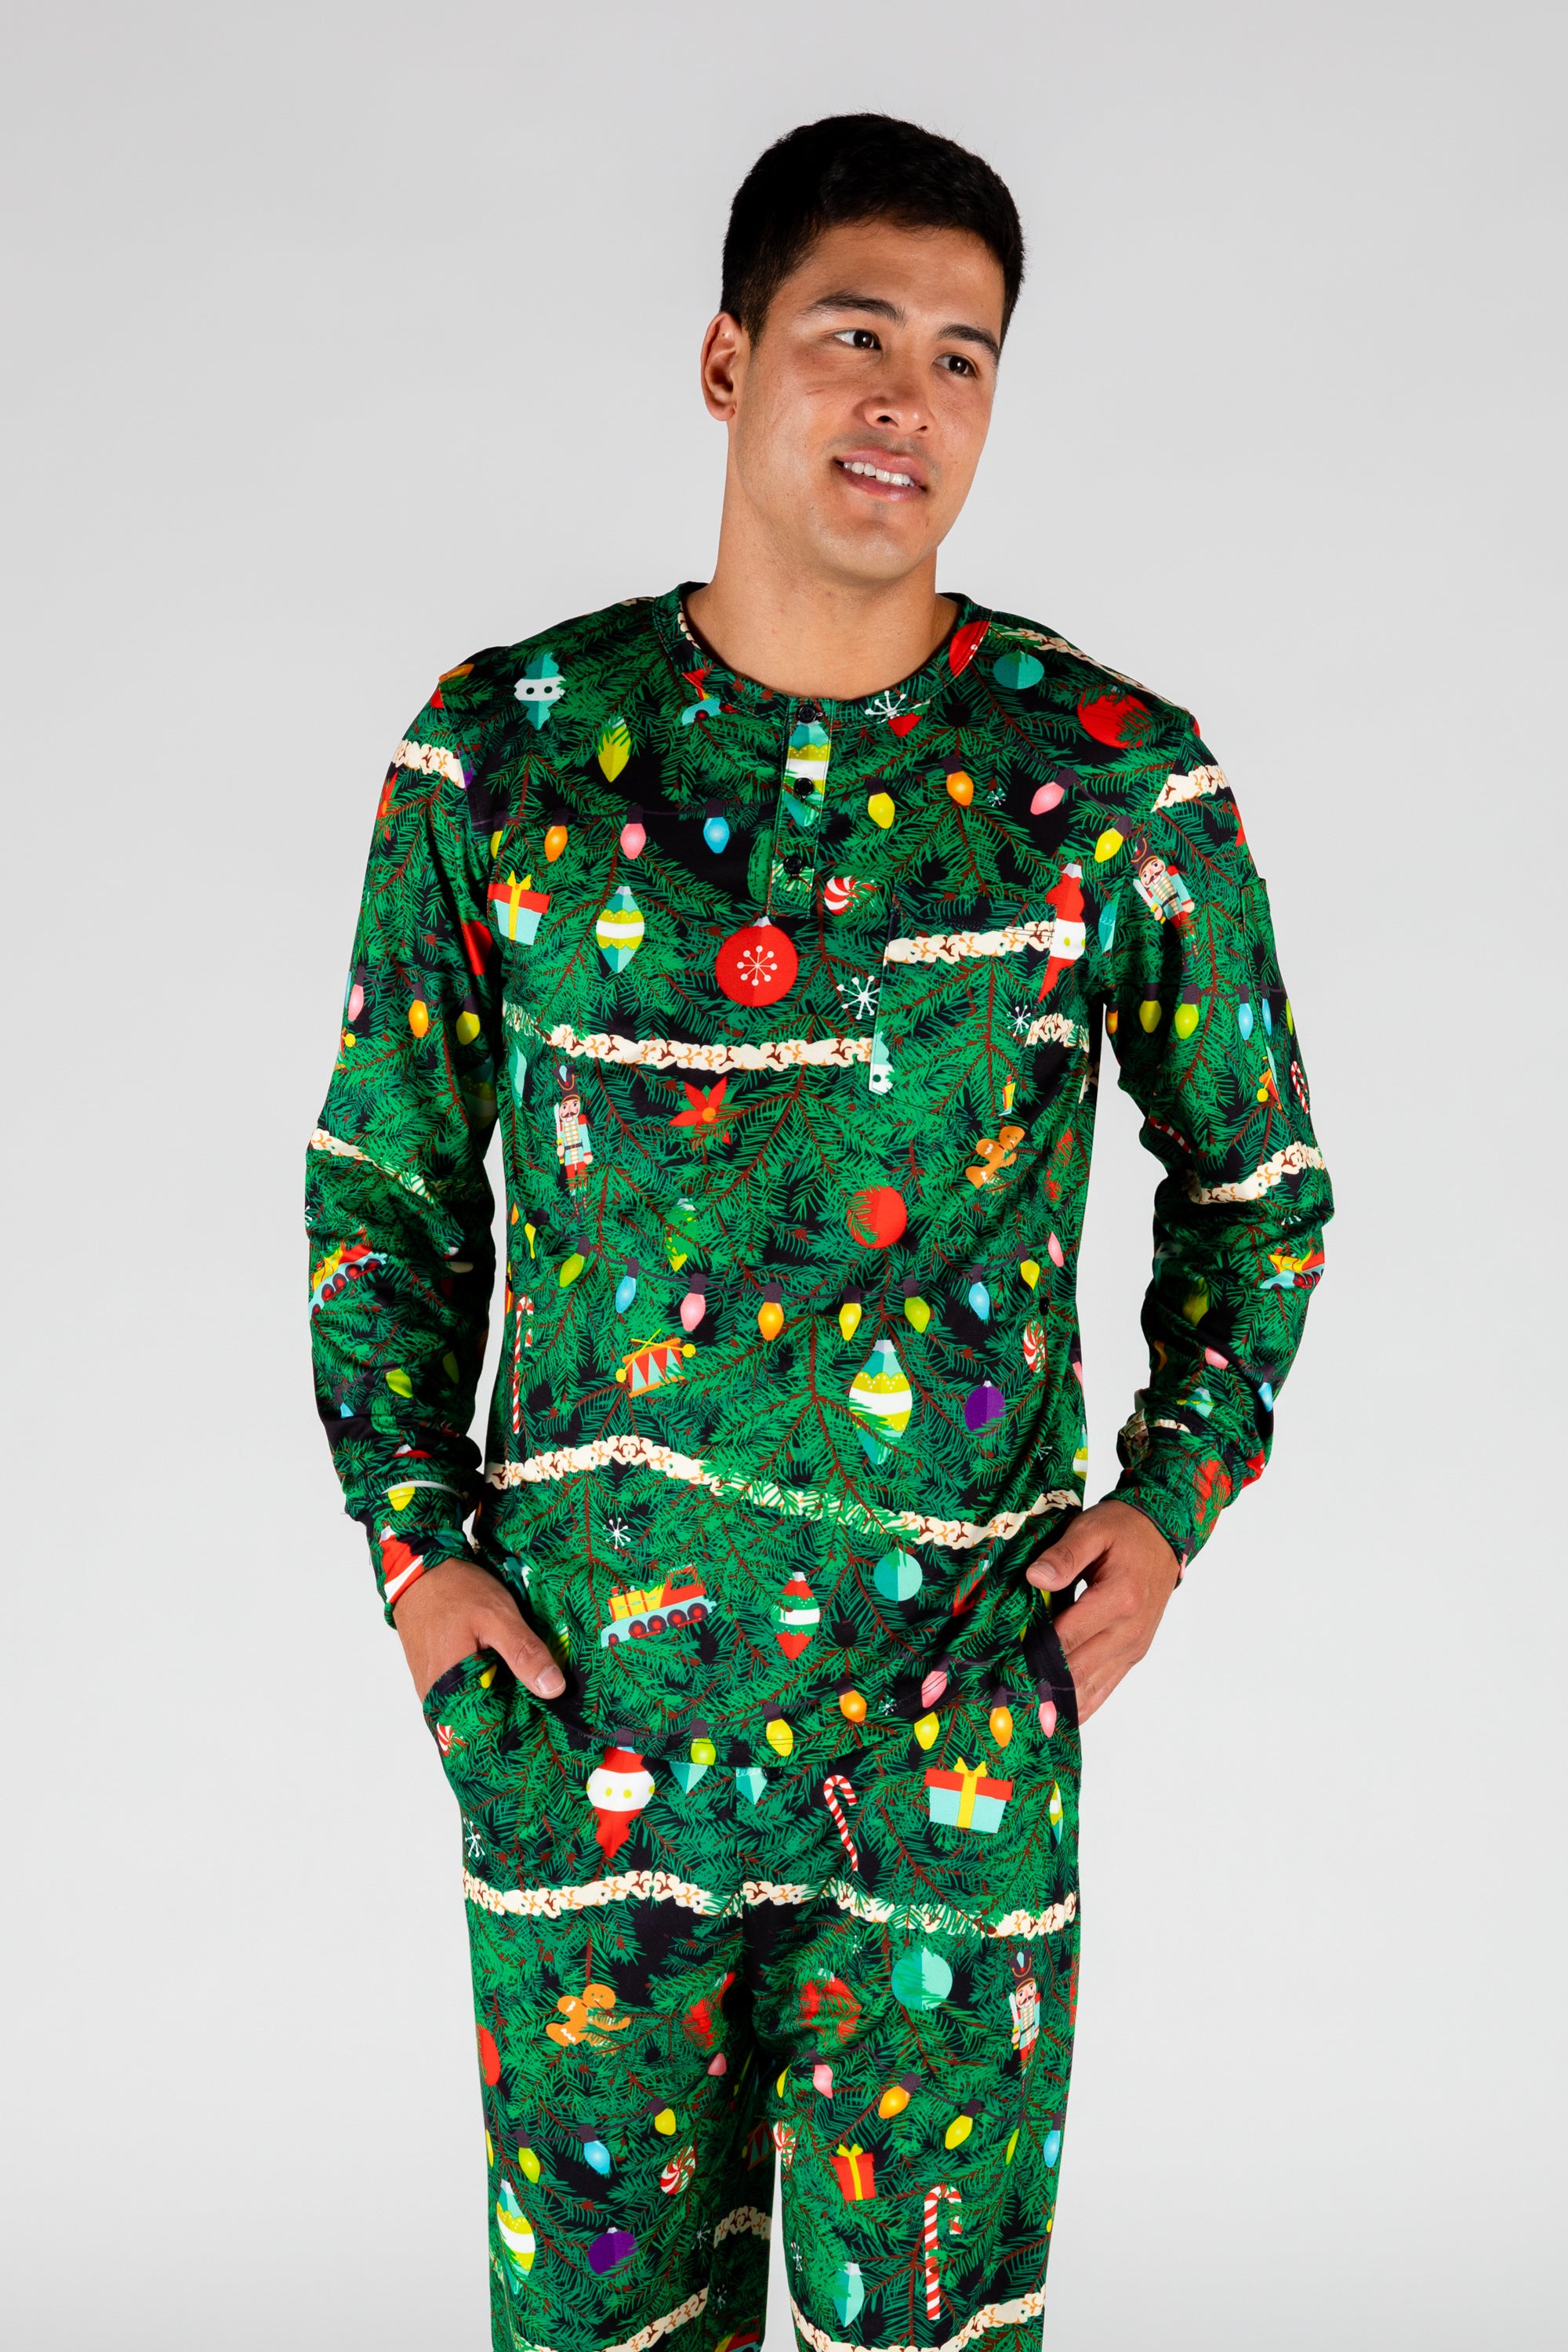 Piket Speciaal voor de helft Men's Christmas Tree Pajama Top | The Christmas Tree Camo